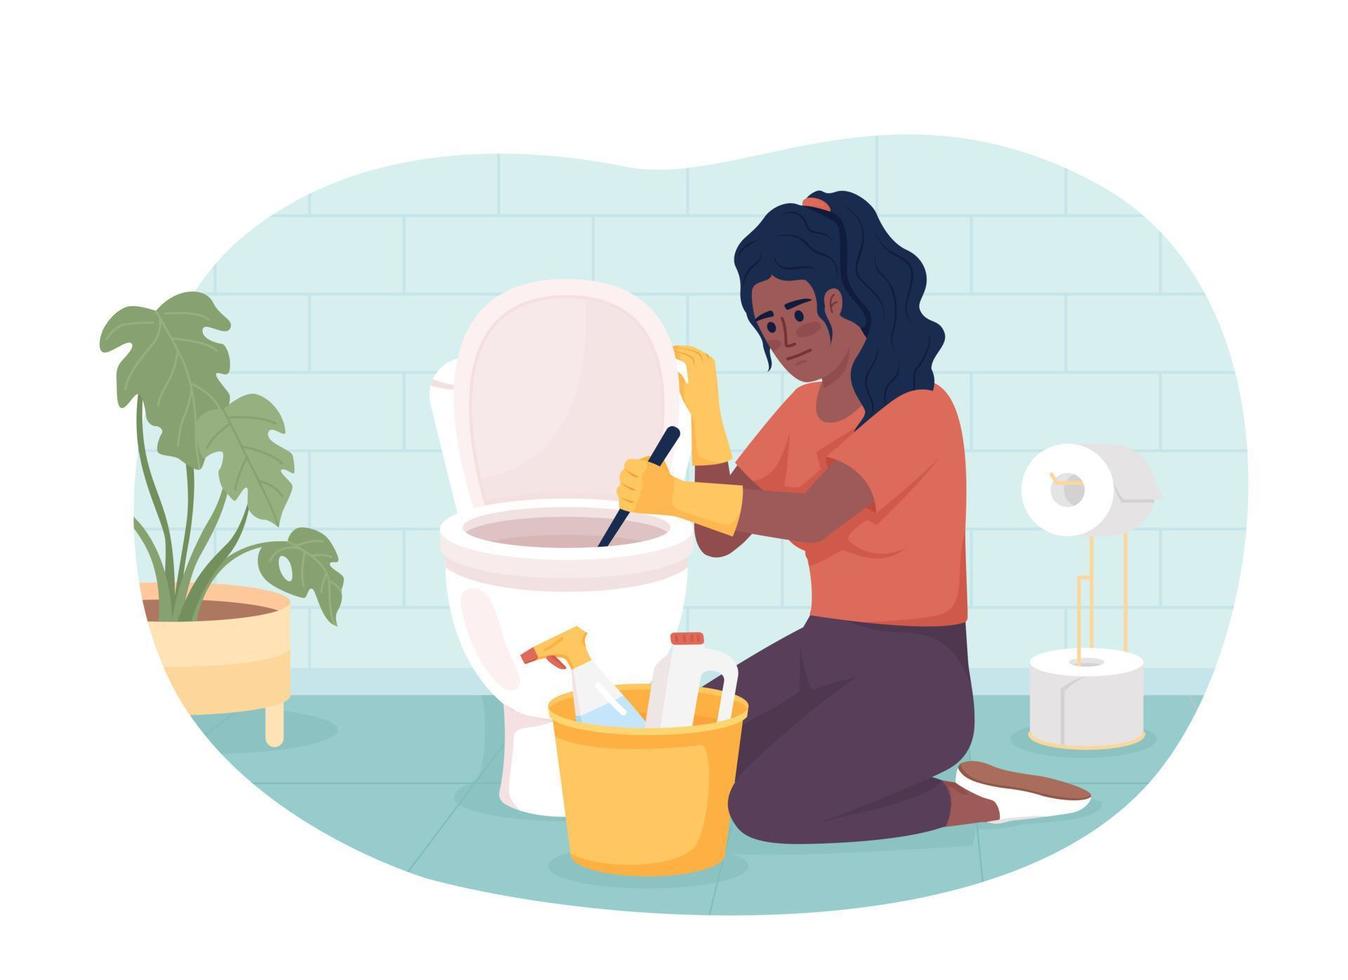 badrum rengöring Syssla 2d vektor isolerat illustration. kvinna skrapning toalett med borsta och tvättmedel platt karaktär på tecknad serie bakgrund. färgrik redigerbar scen för mobil, hemsida, presentation